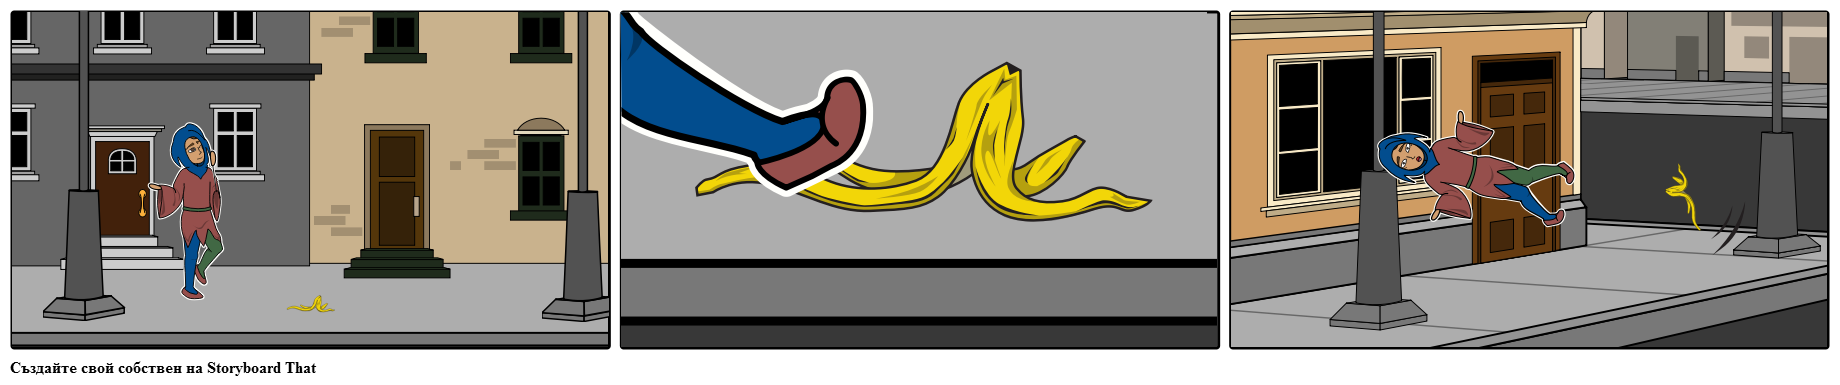 Джестър се хвърля върху бананова кора